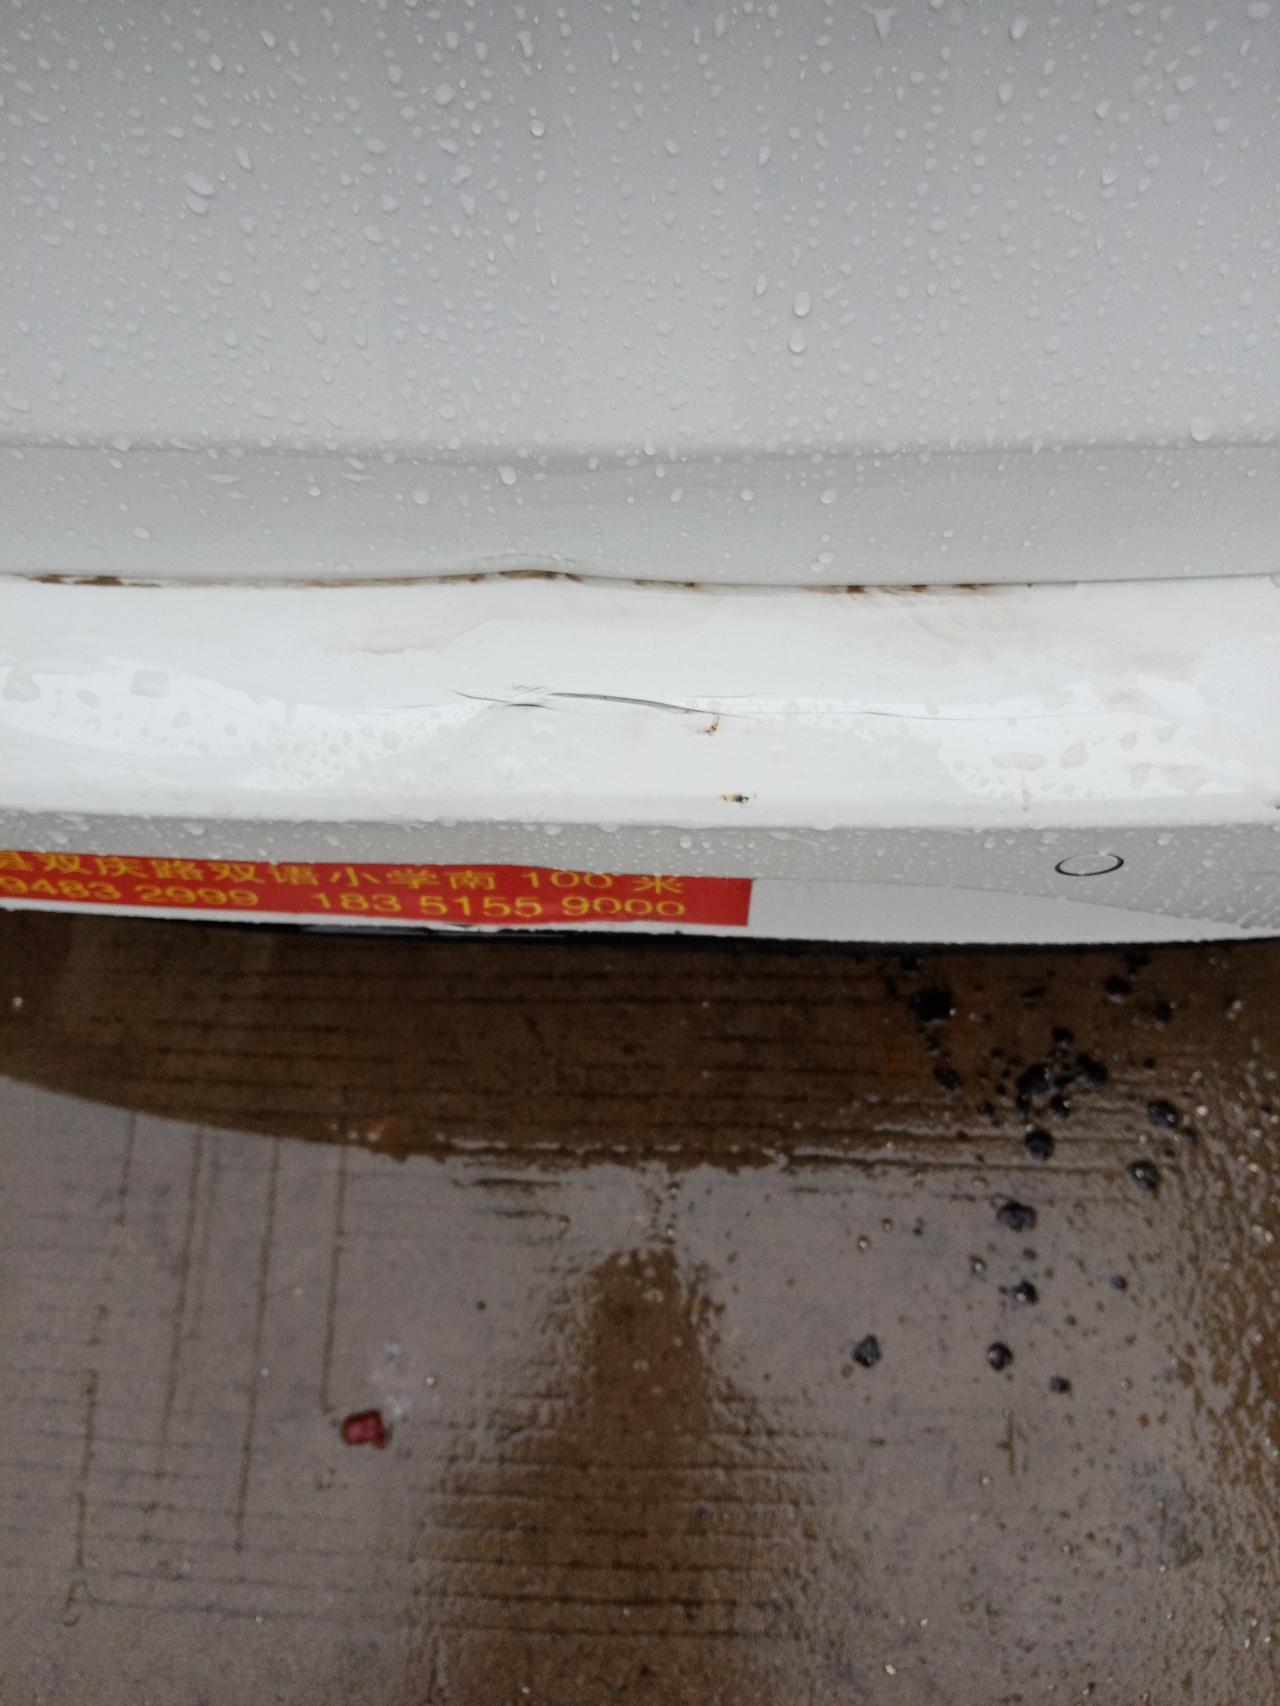 别克英朗 刚提车几天，昨晚下大雨倒车时撞到了杆子，迷津 这个该怎么处理。走保险吗？还是怎么弄